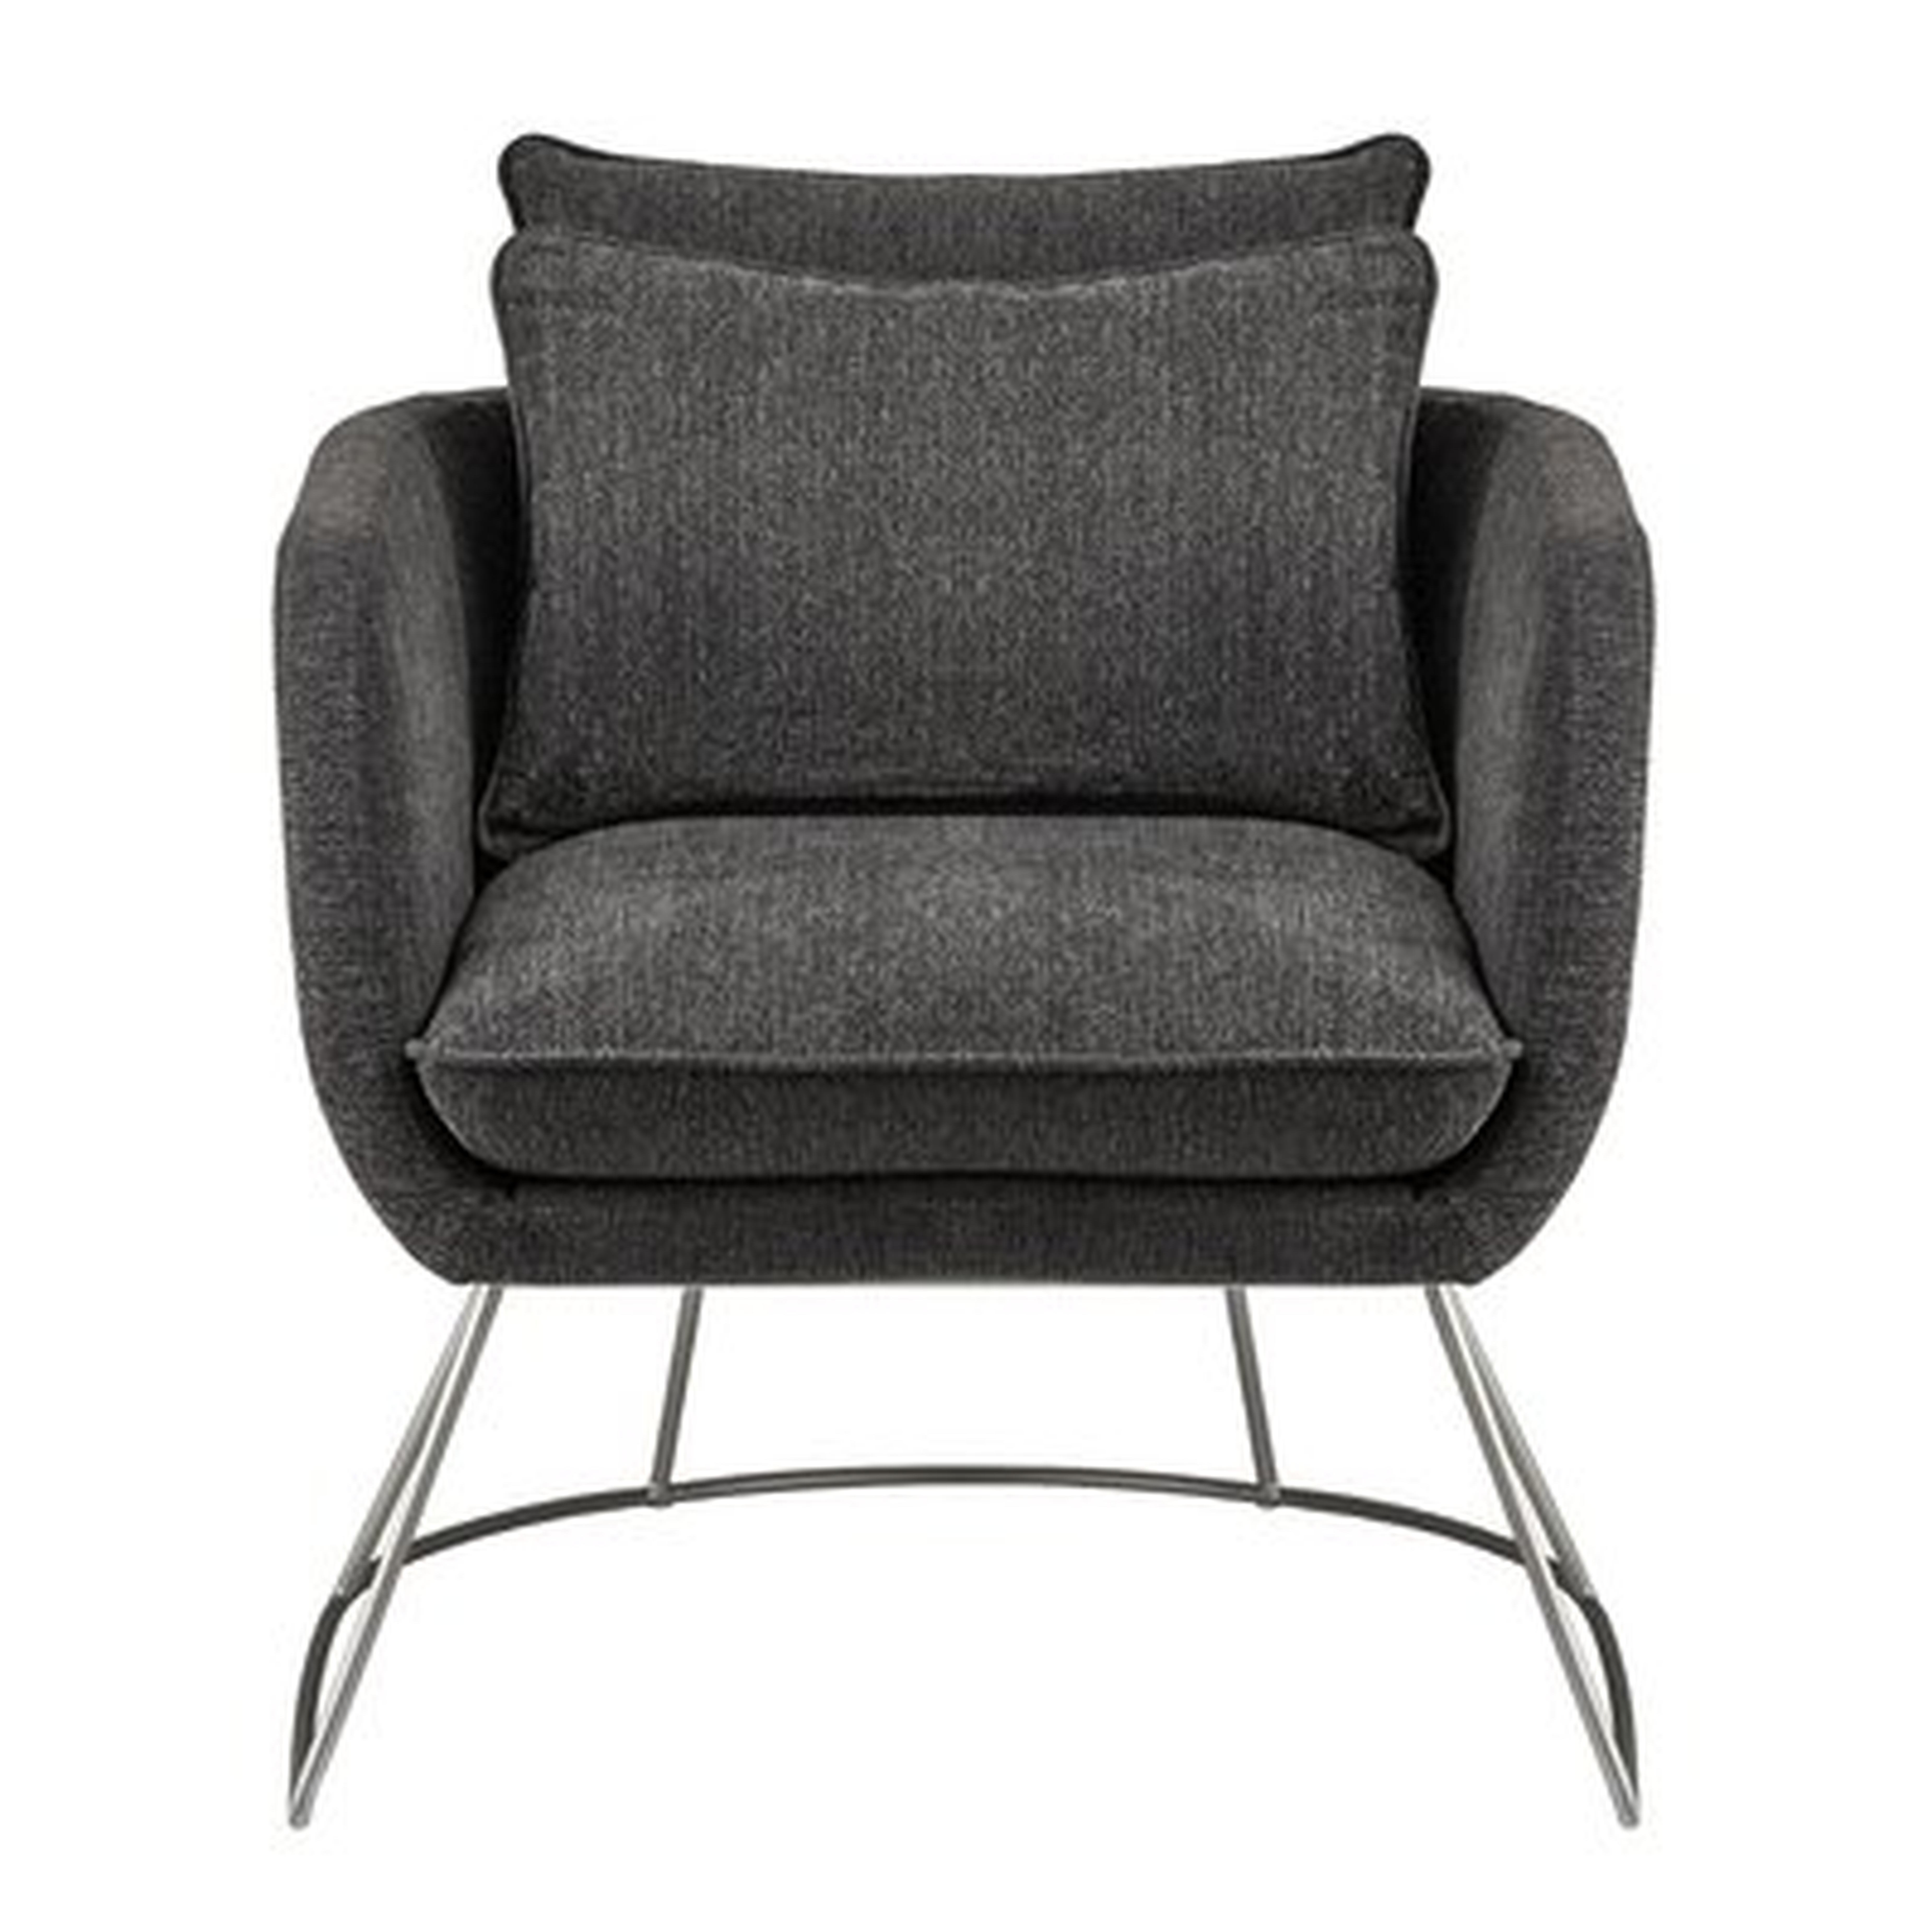 Richview Barrel Chair, Dark Gray - Wayfair